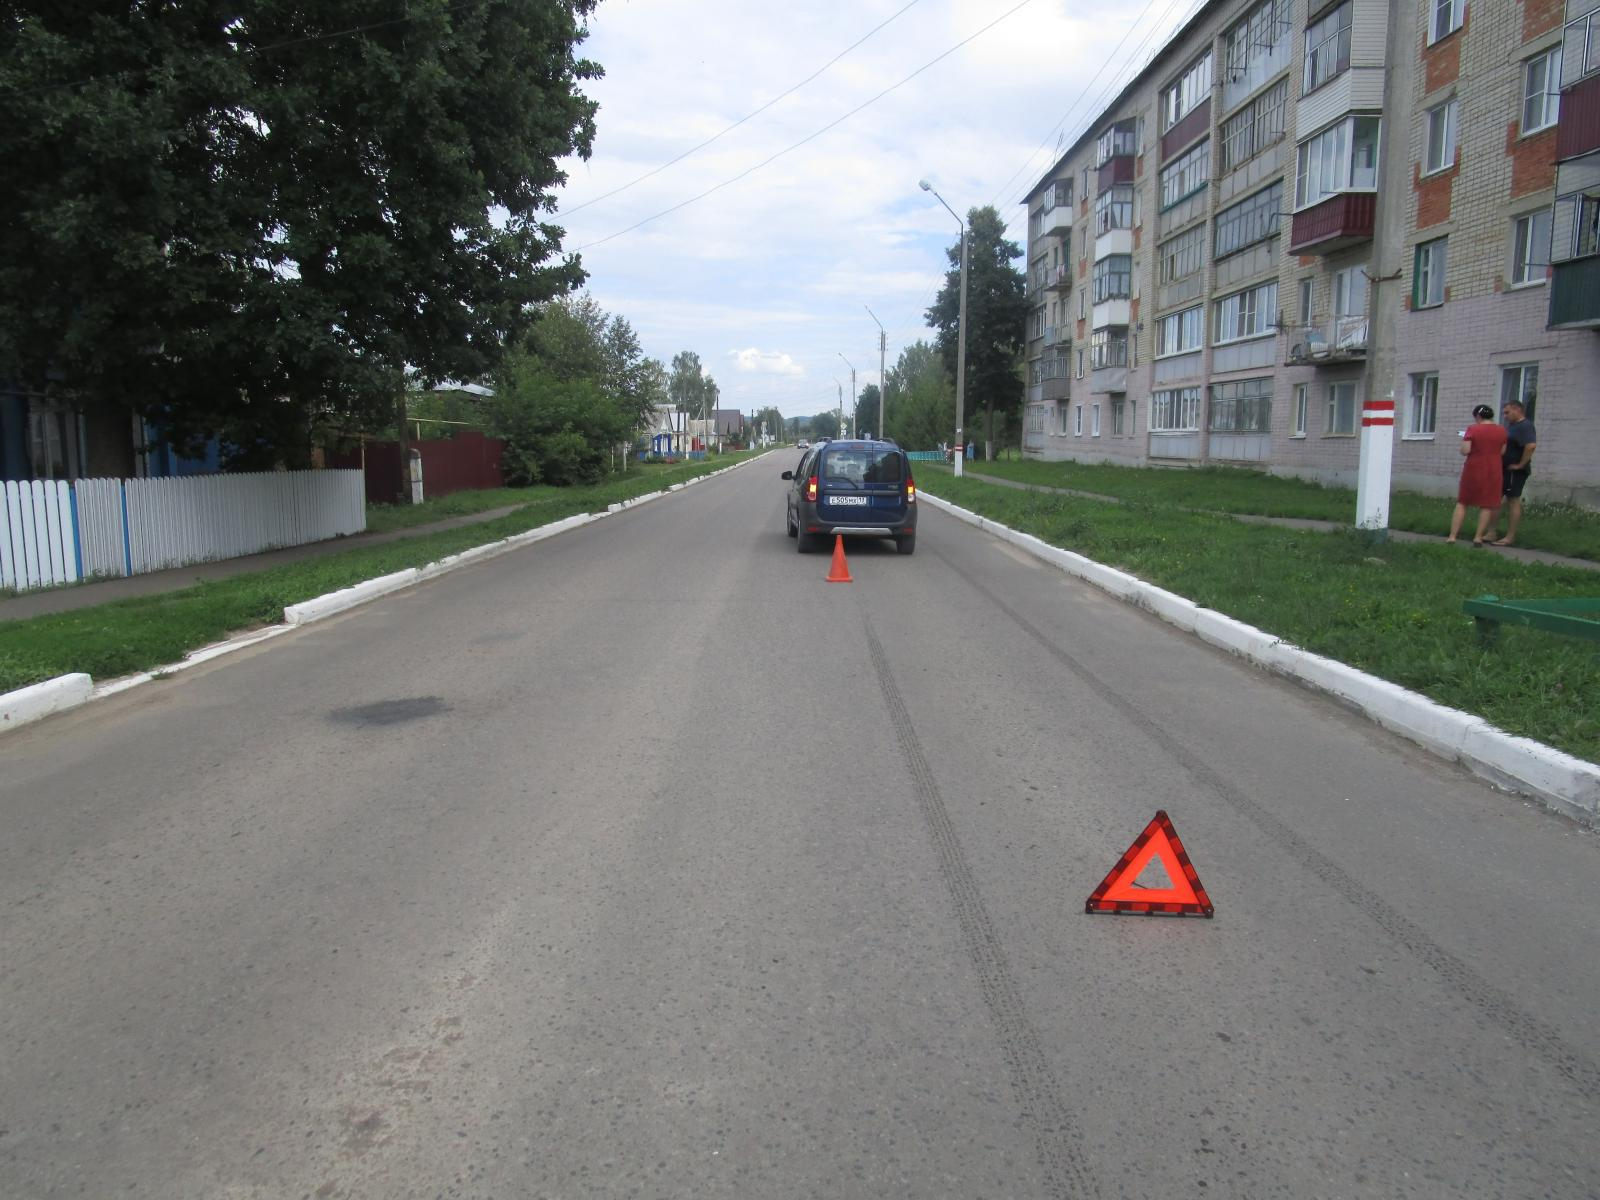 Перебегал дорогу в неположенном месте: в Мордовии водитель сбил восьмилетнего мальчика